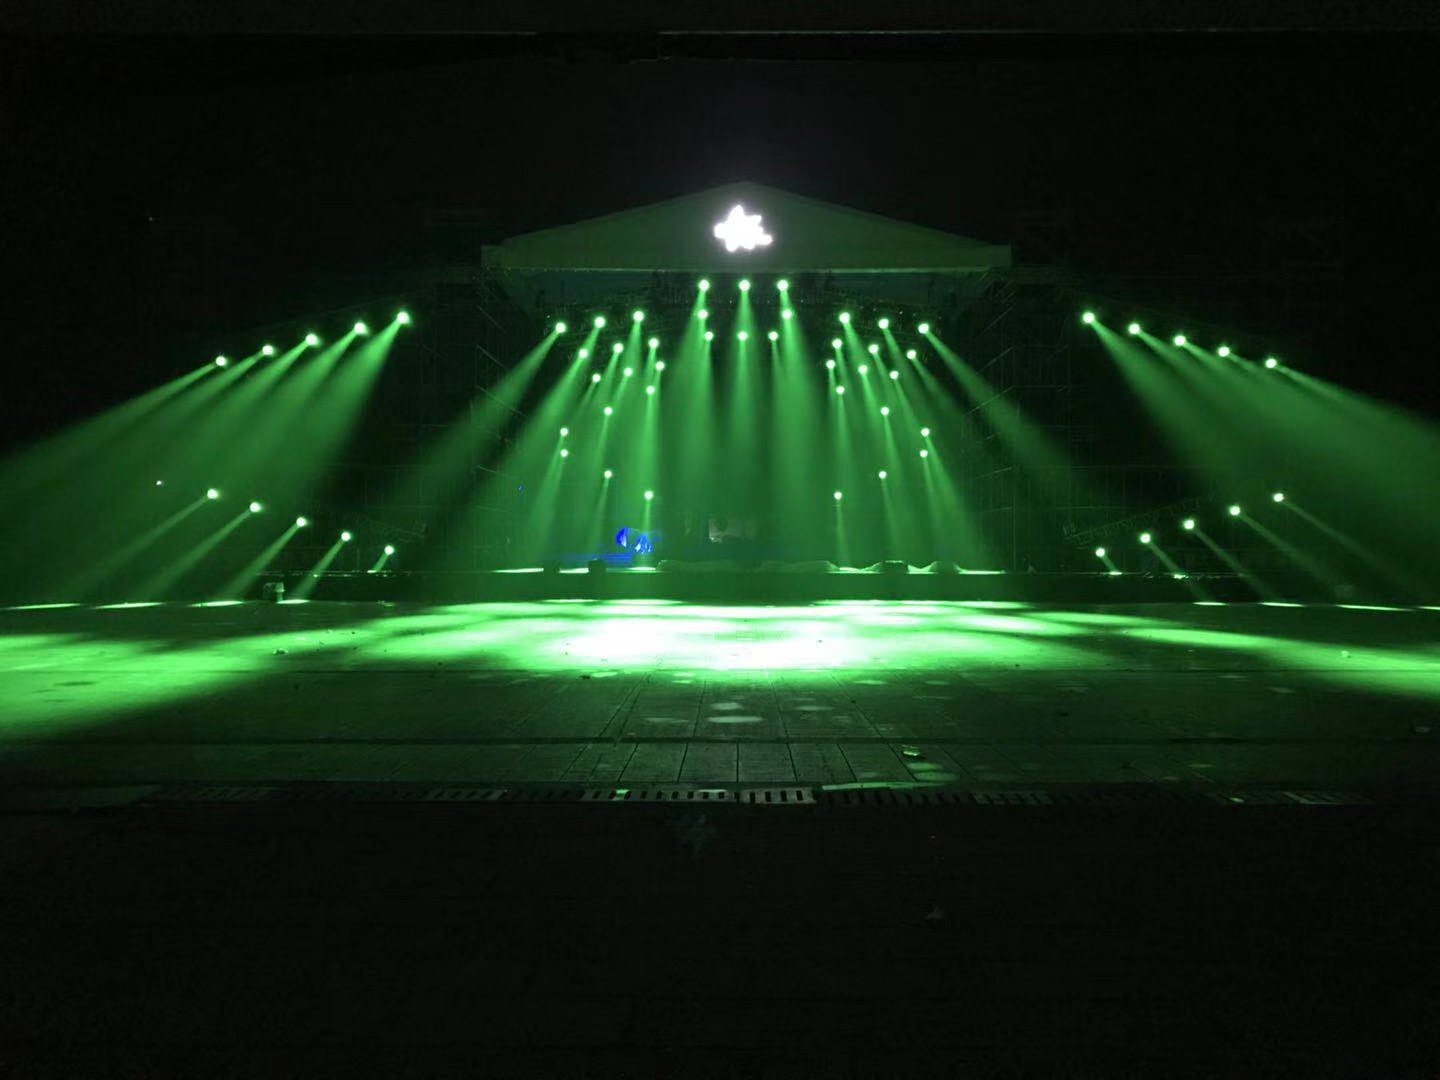 江苏K15LED 摇头灯 2020 K15 LED moving head light project in China Jiangsu Province